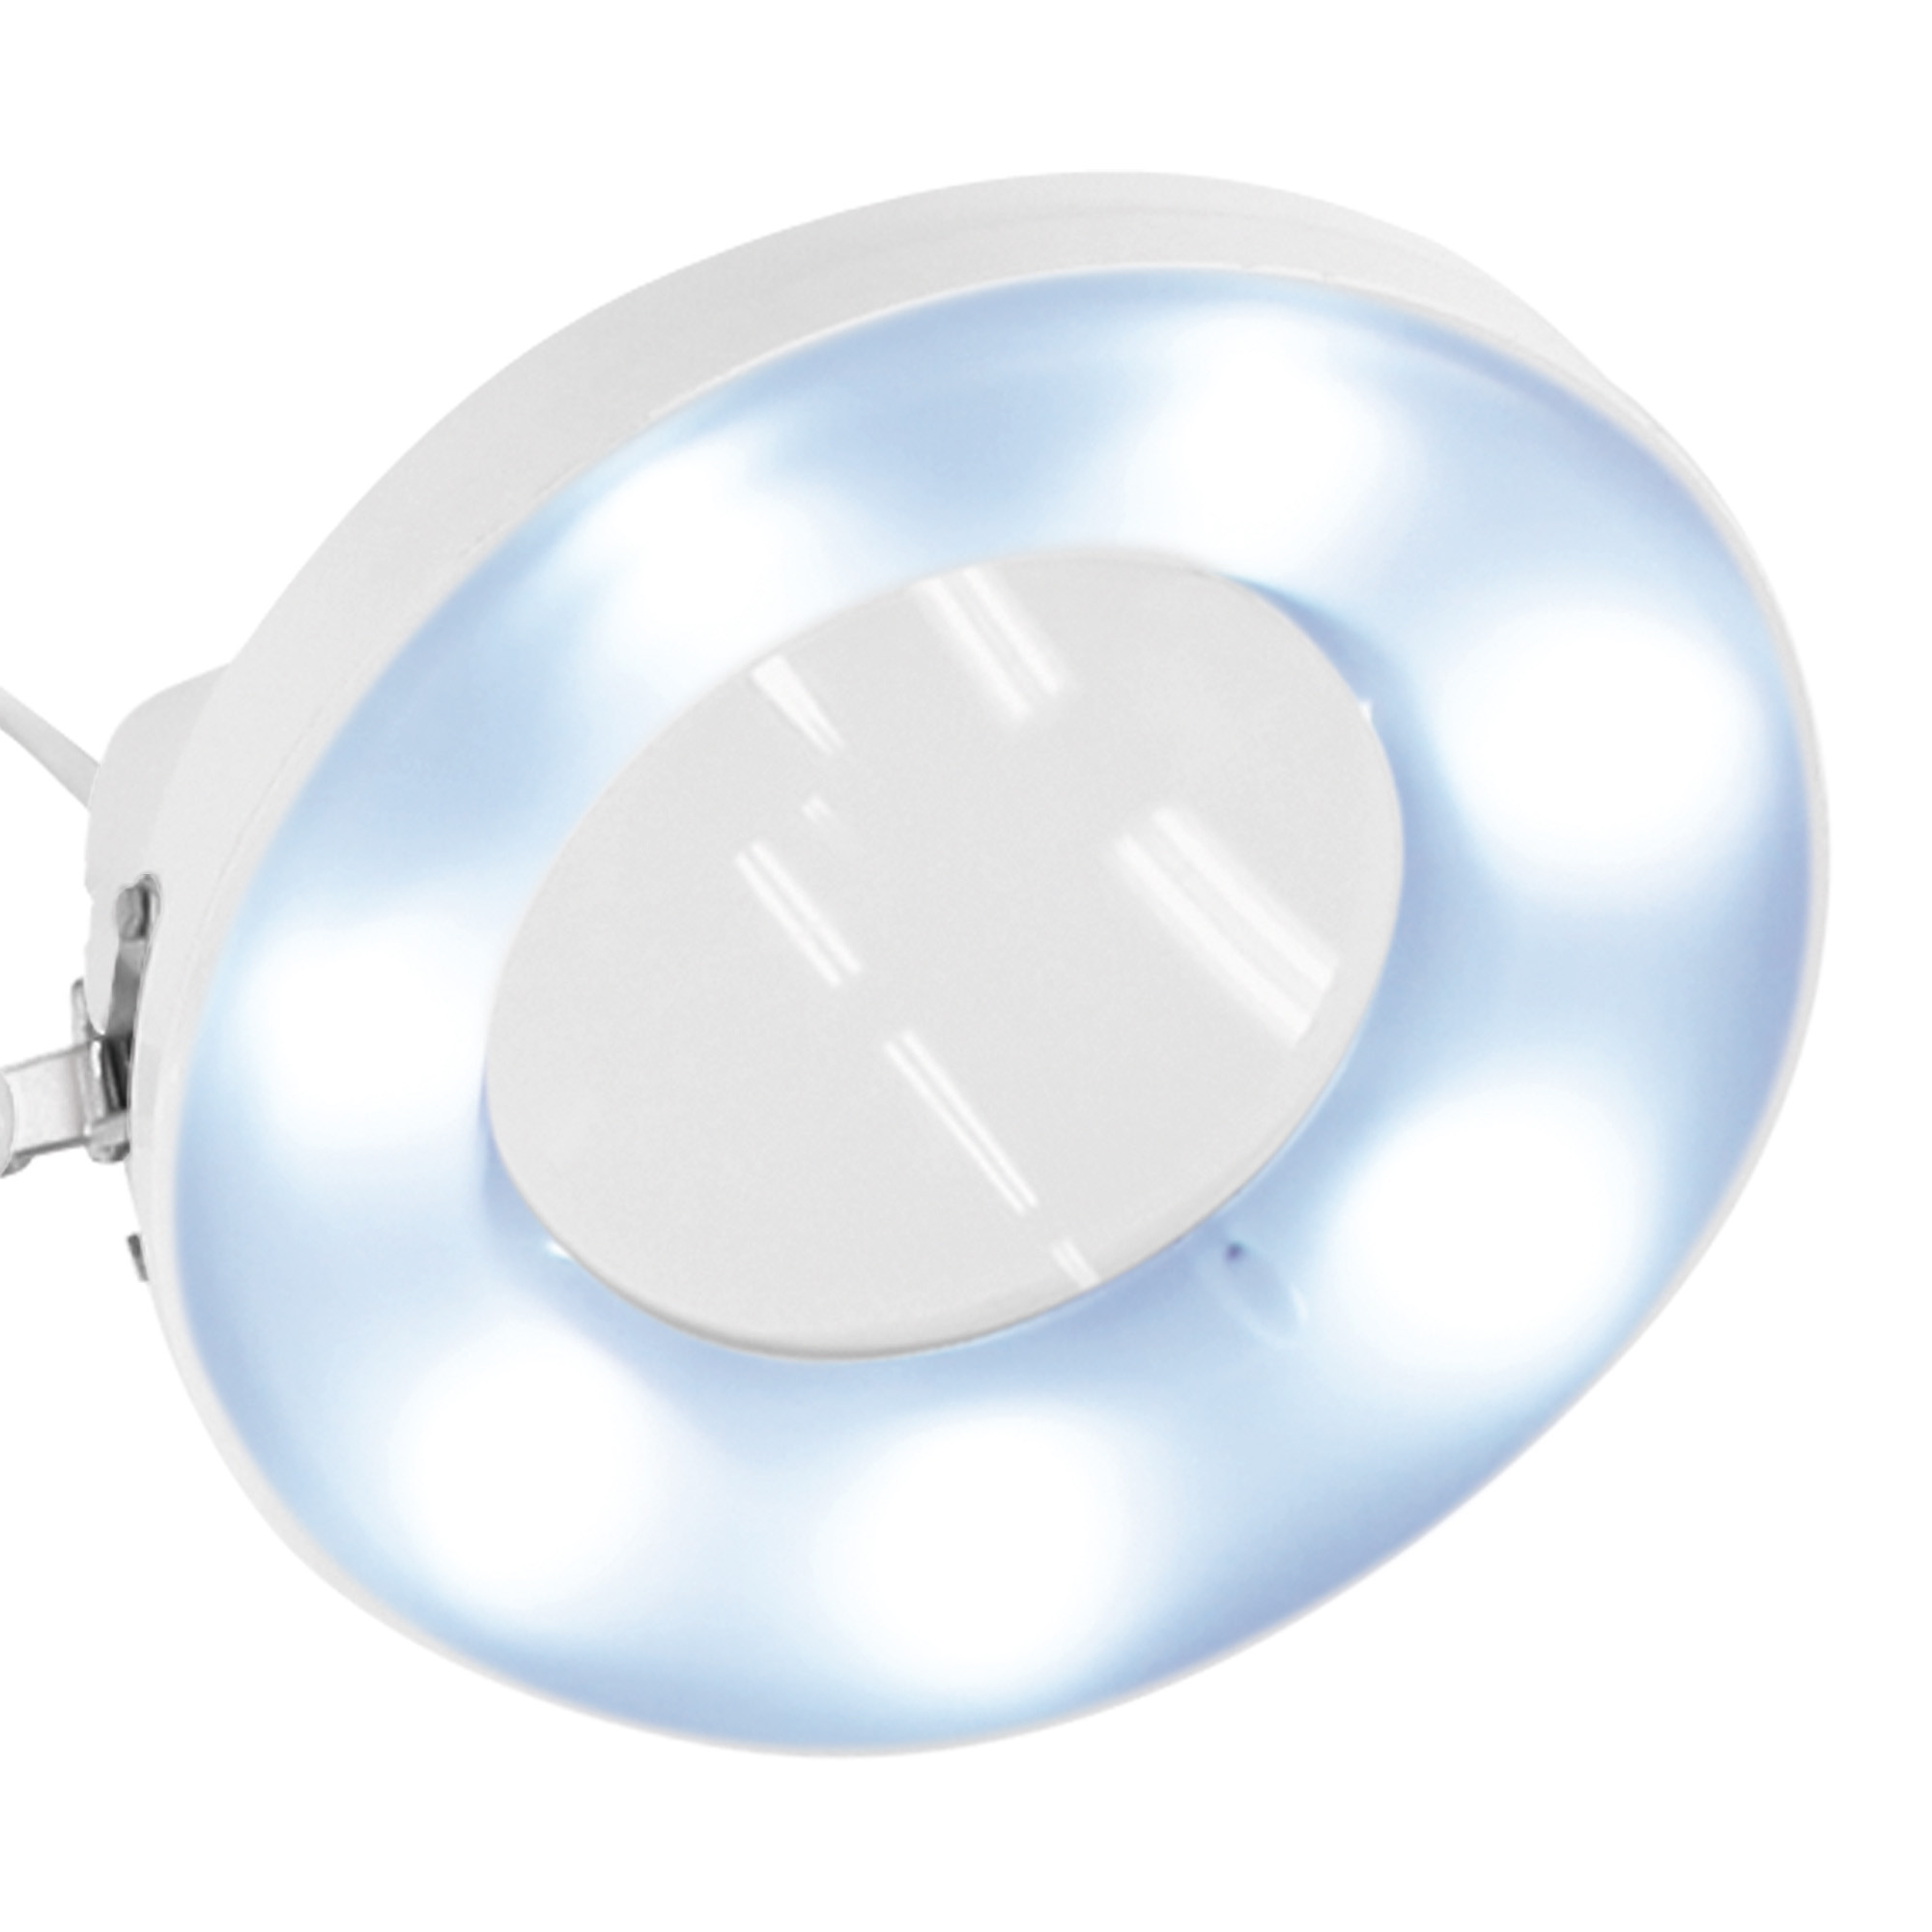 Afma Evo Lampe mit LED-Licht und weißer 3-Diopter-Lupe